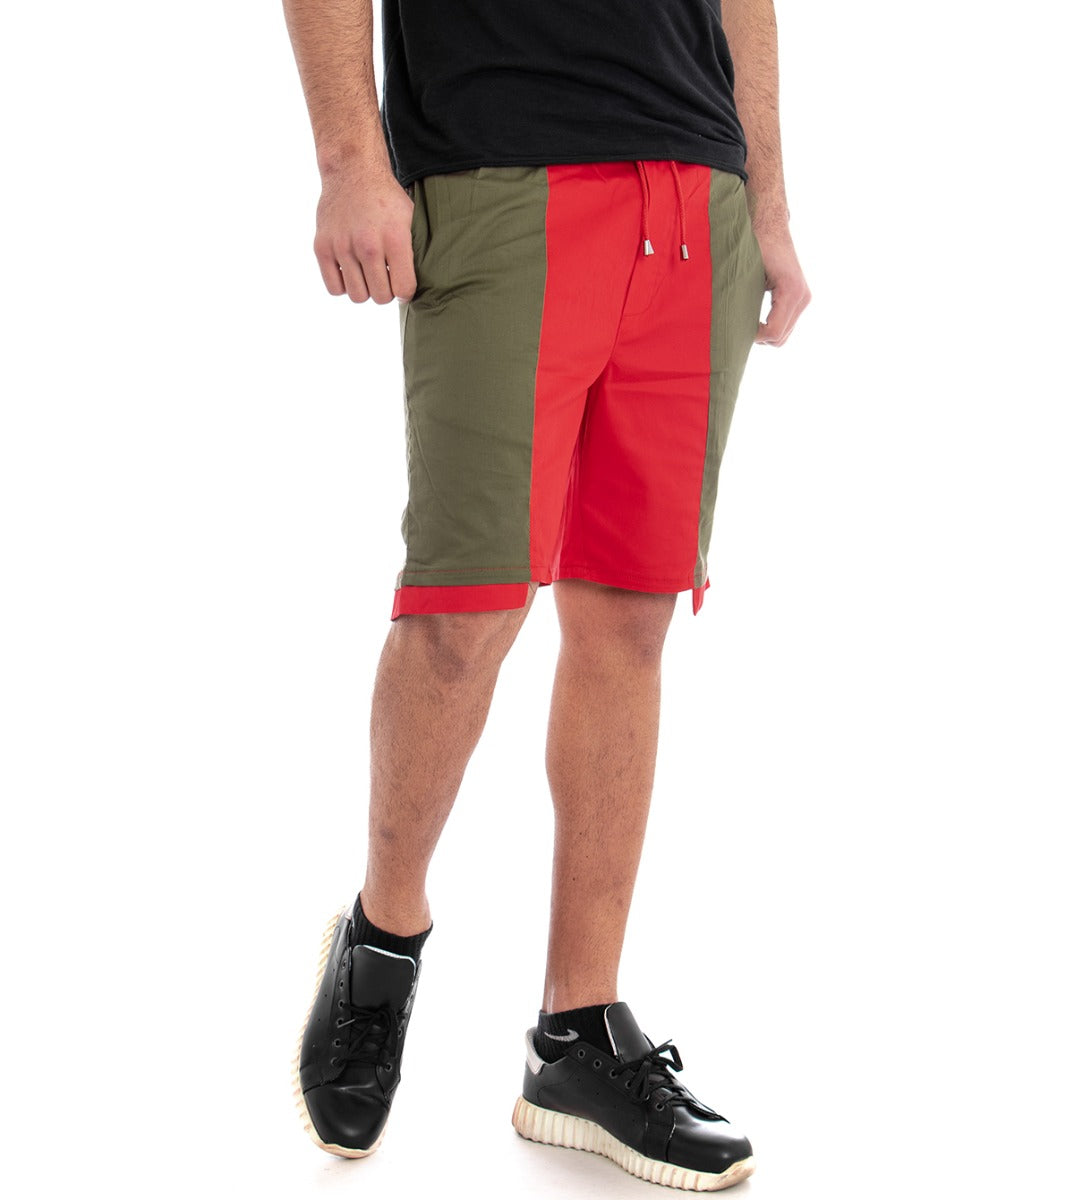 Bermuda Pantaloncino Uomo Corto Elastico Bicolore GIOSAL-PC1279A